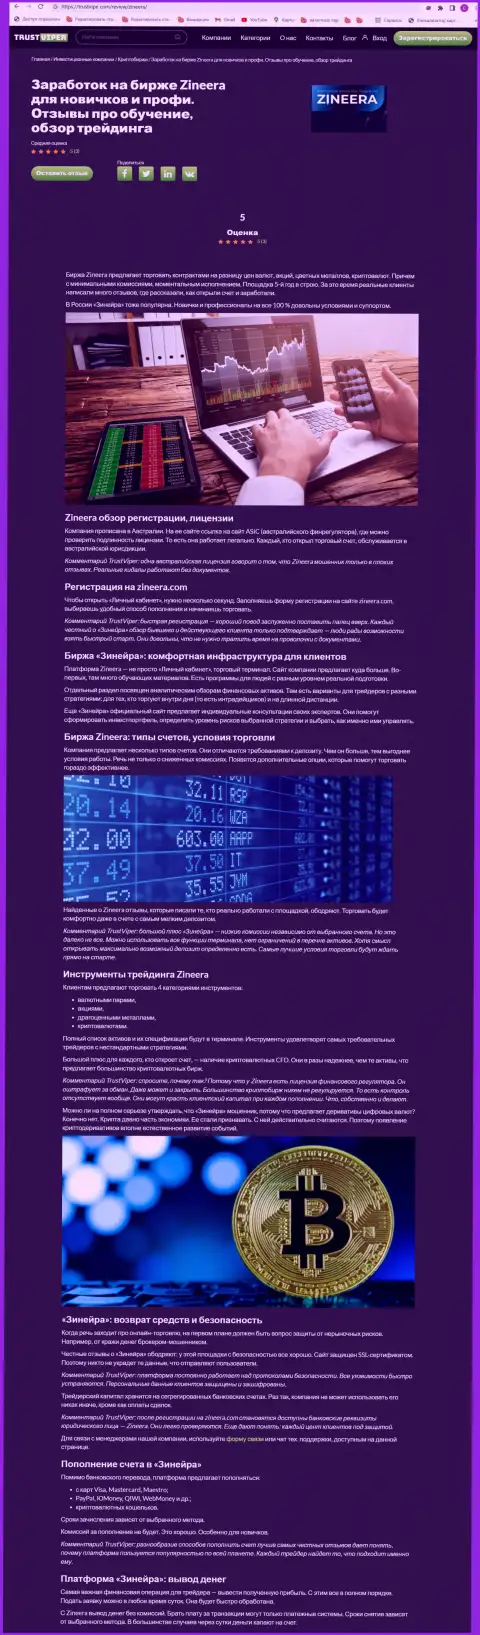 Обзор условий торгов криптовалютной брокерской компании Зиннейра на информационном сервисе траствайпер ком